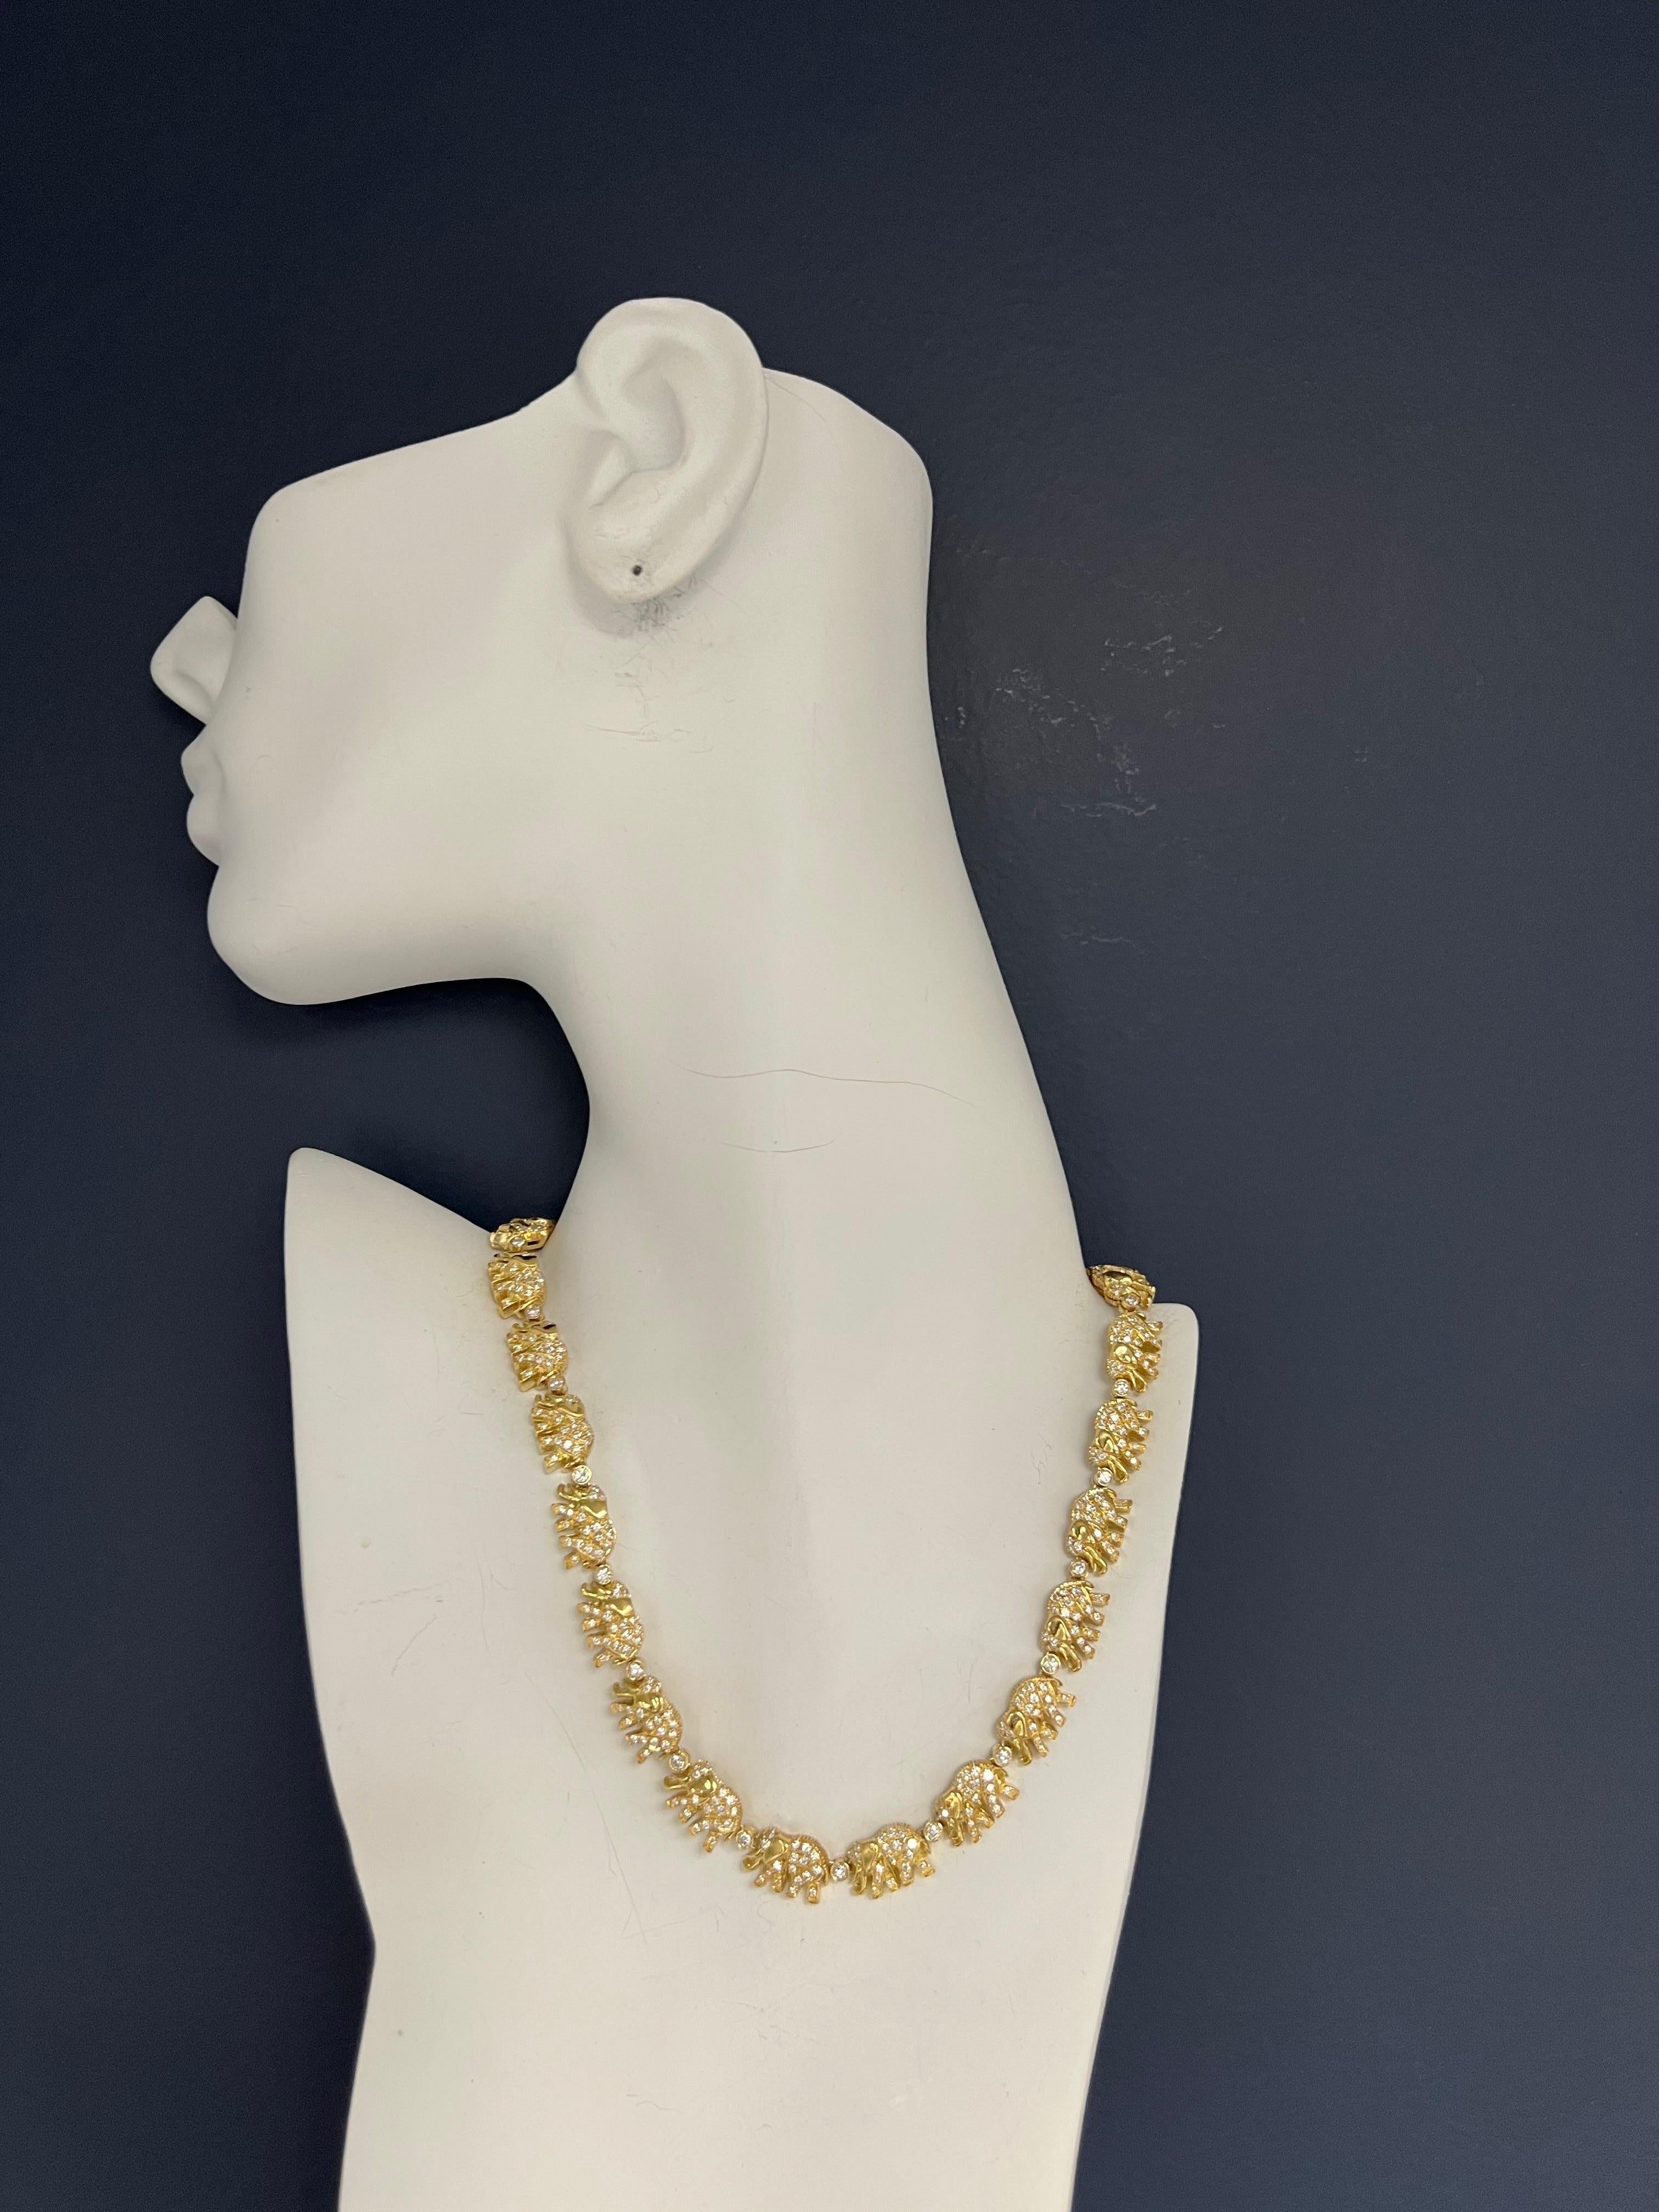 Magnificent 5,50 Karat (ca.) Natural Diamond Elephant Halskette in 18k Gelbgold gesetzt. Es gibt 24 Elefantenglieder. 

Das Stück ist mit 456 natürlichen farblosen runden Brillanten mit einem Gewicht von 5,50 Karat besetzt, die Diamanten haben eine